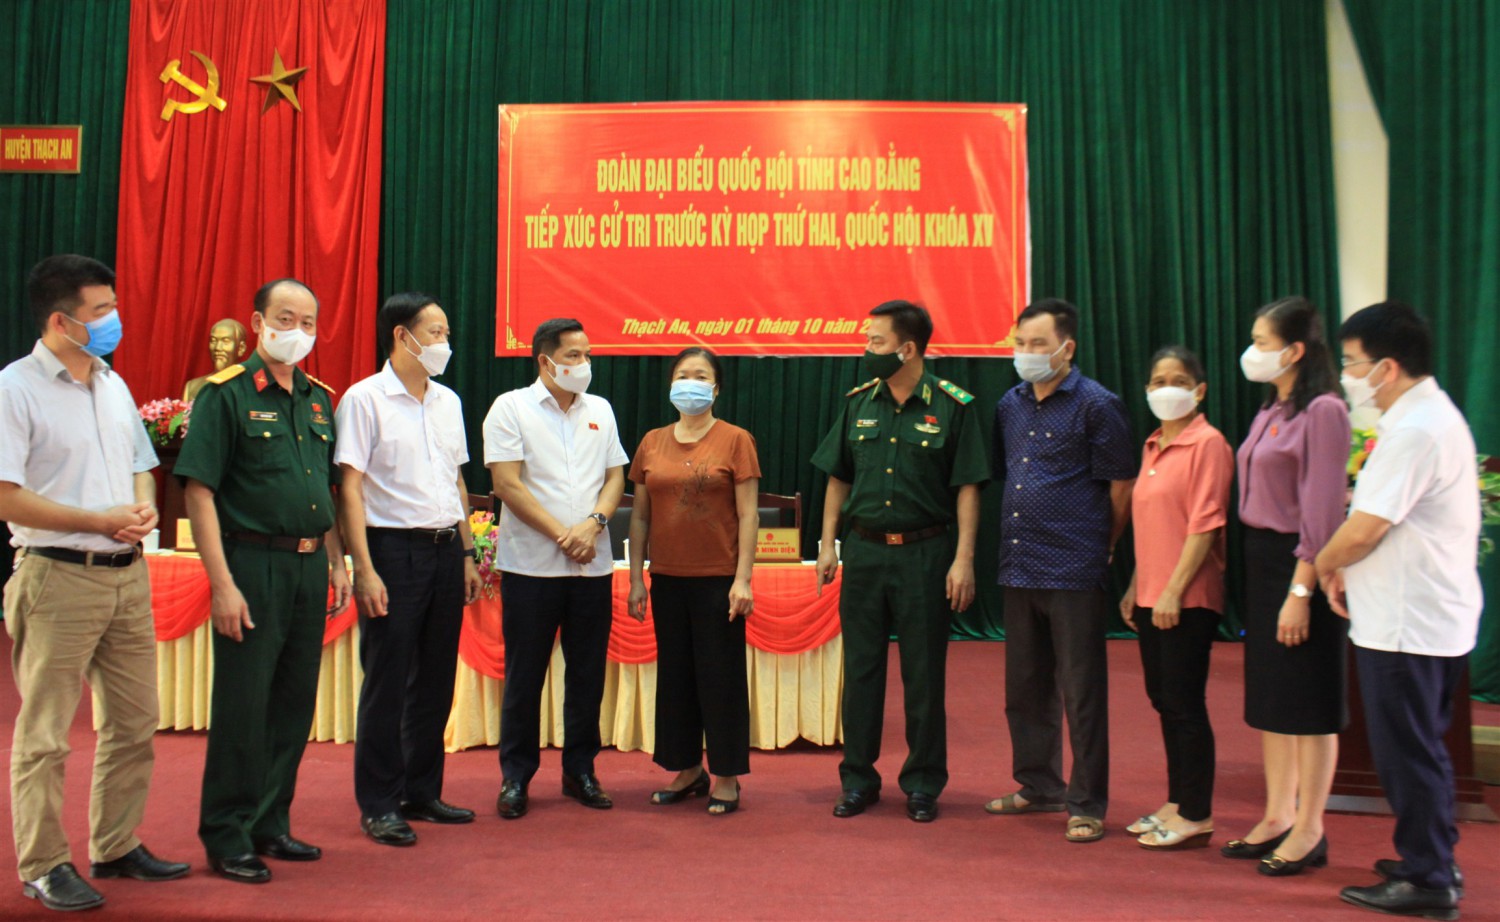 Đoàn đại biểu Quốc hội tỉnh trao đổi với cử tri huyện Trùng Khánh.